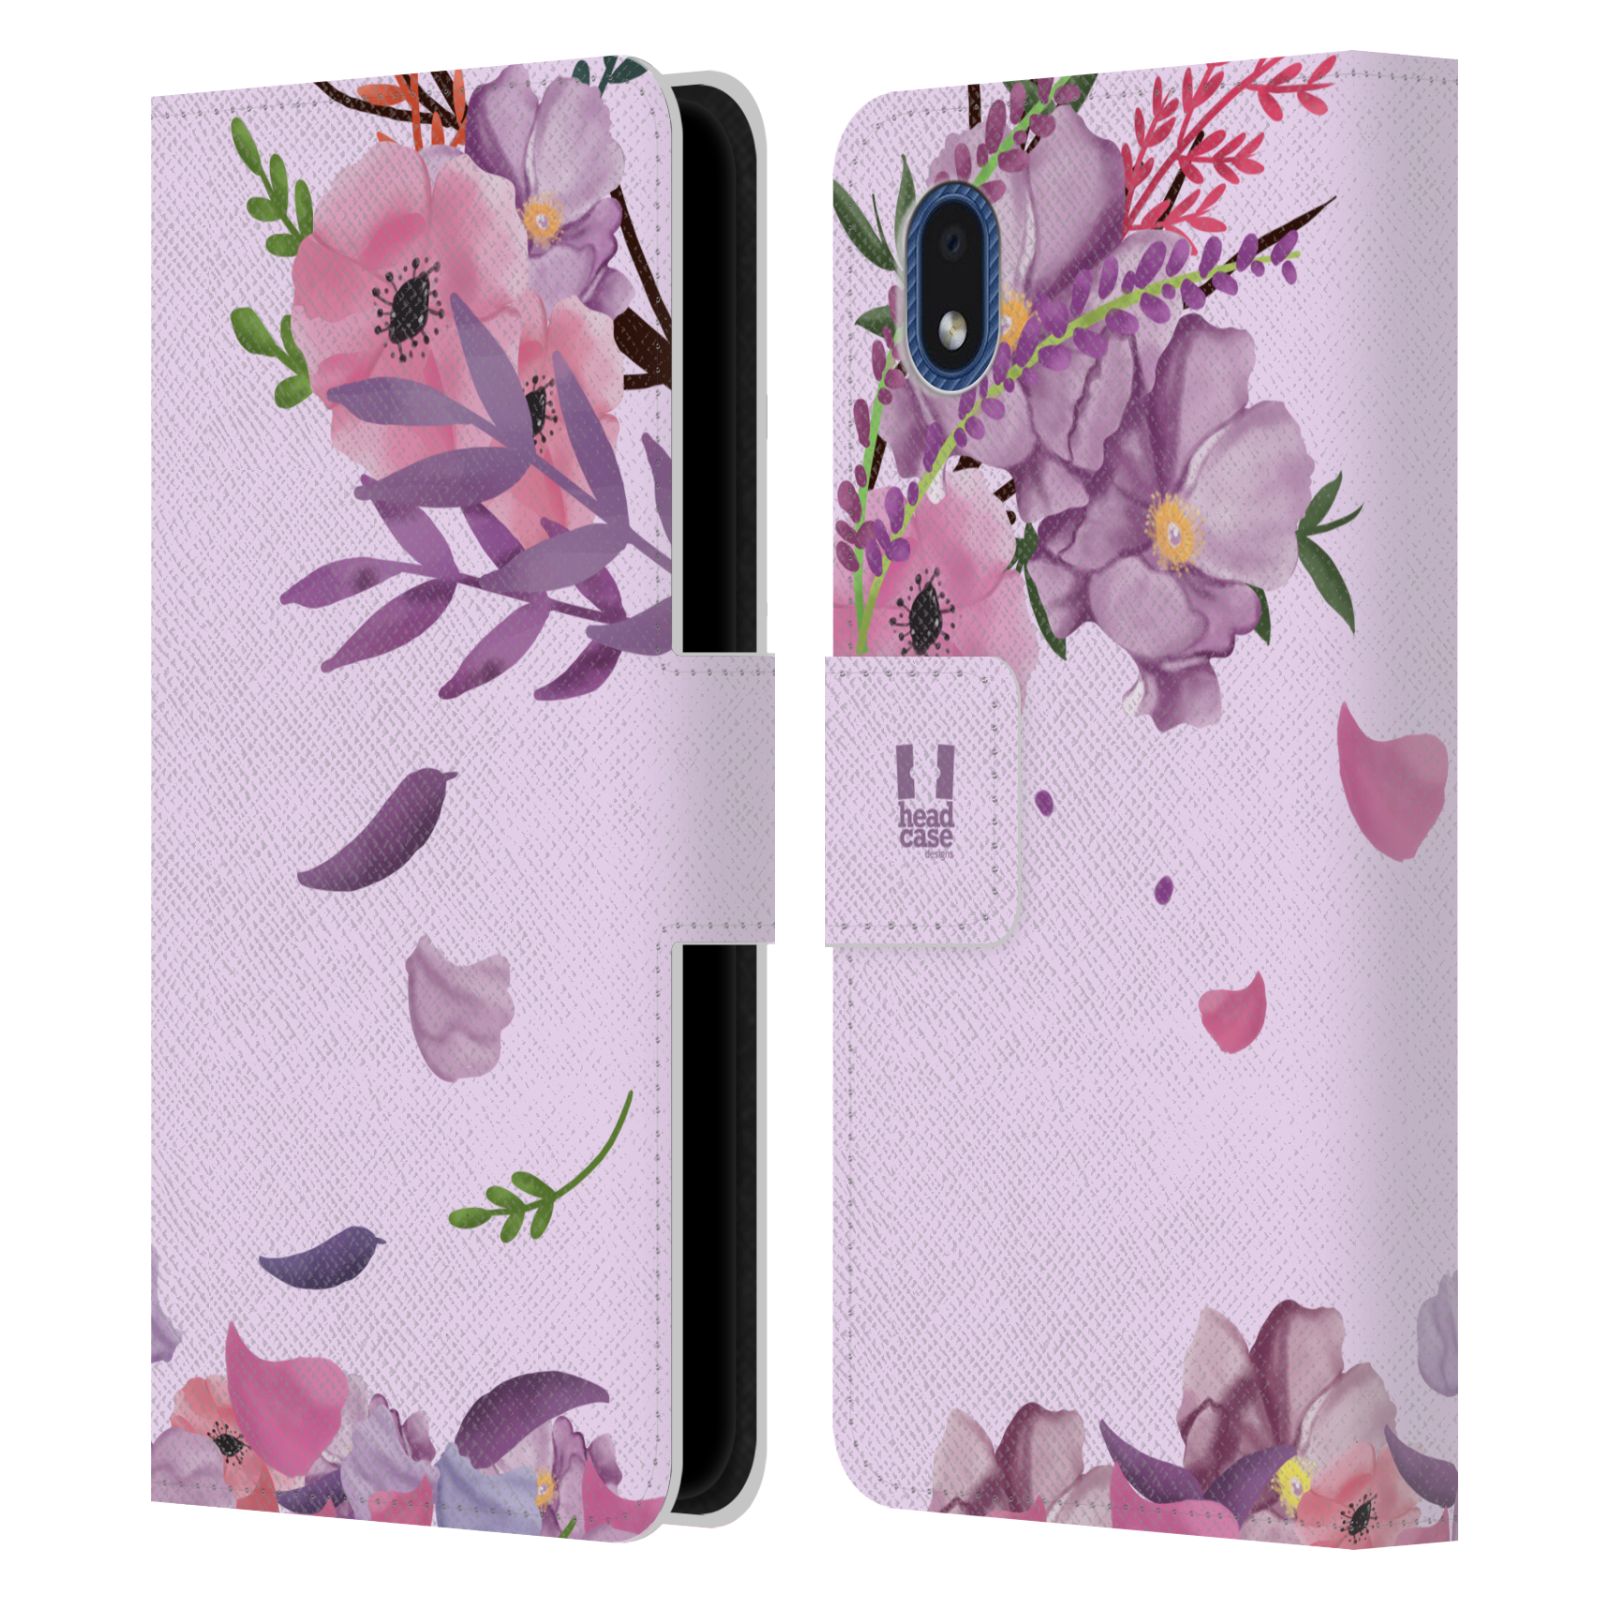 Pouzdro na mobil Samsung Galaxy A01 CORE - HEAD CASE - Rozkvetlé růže a listy růžová